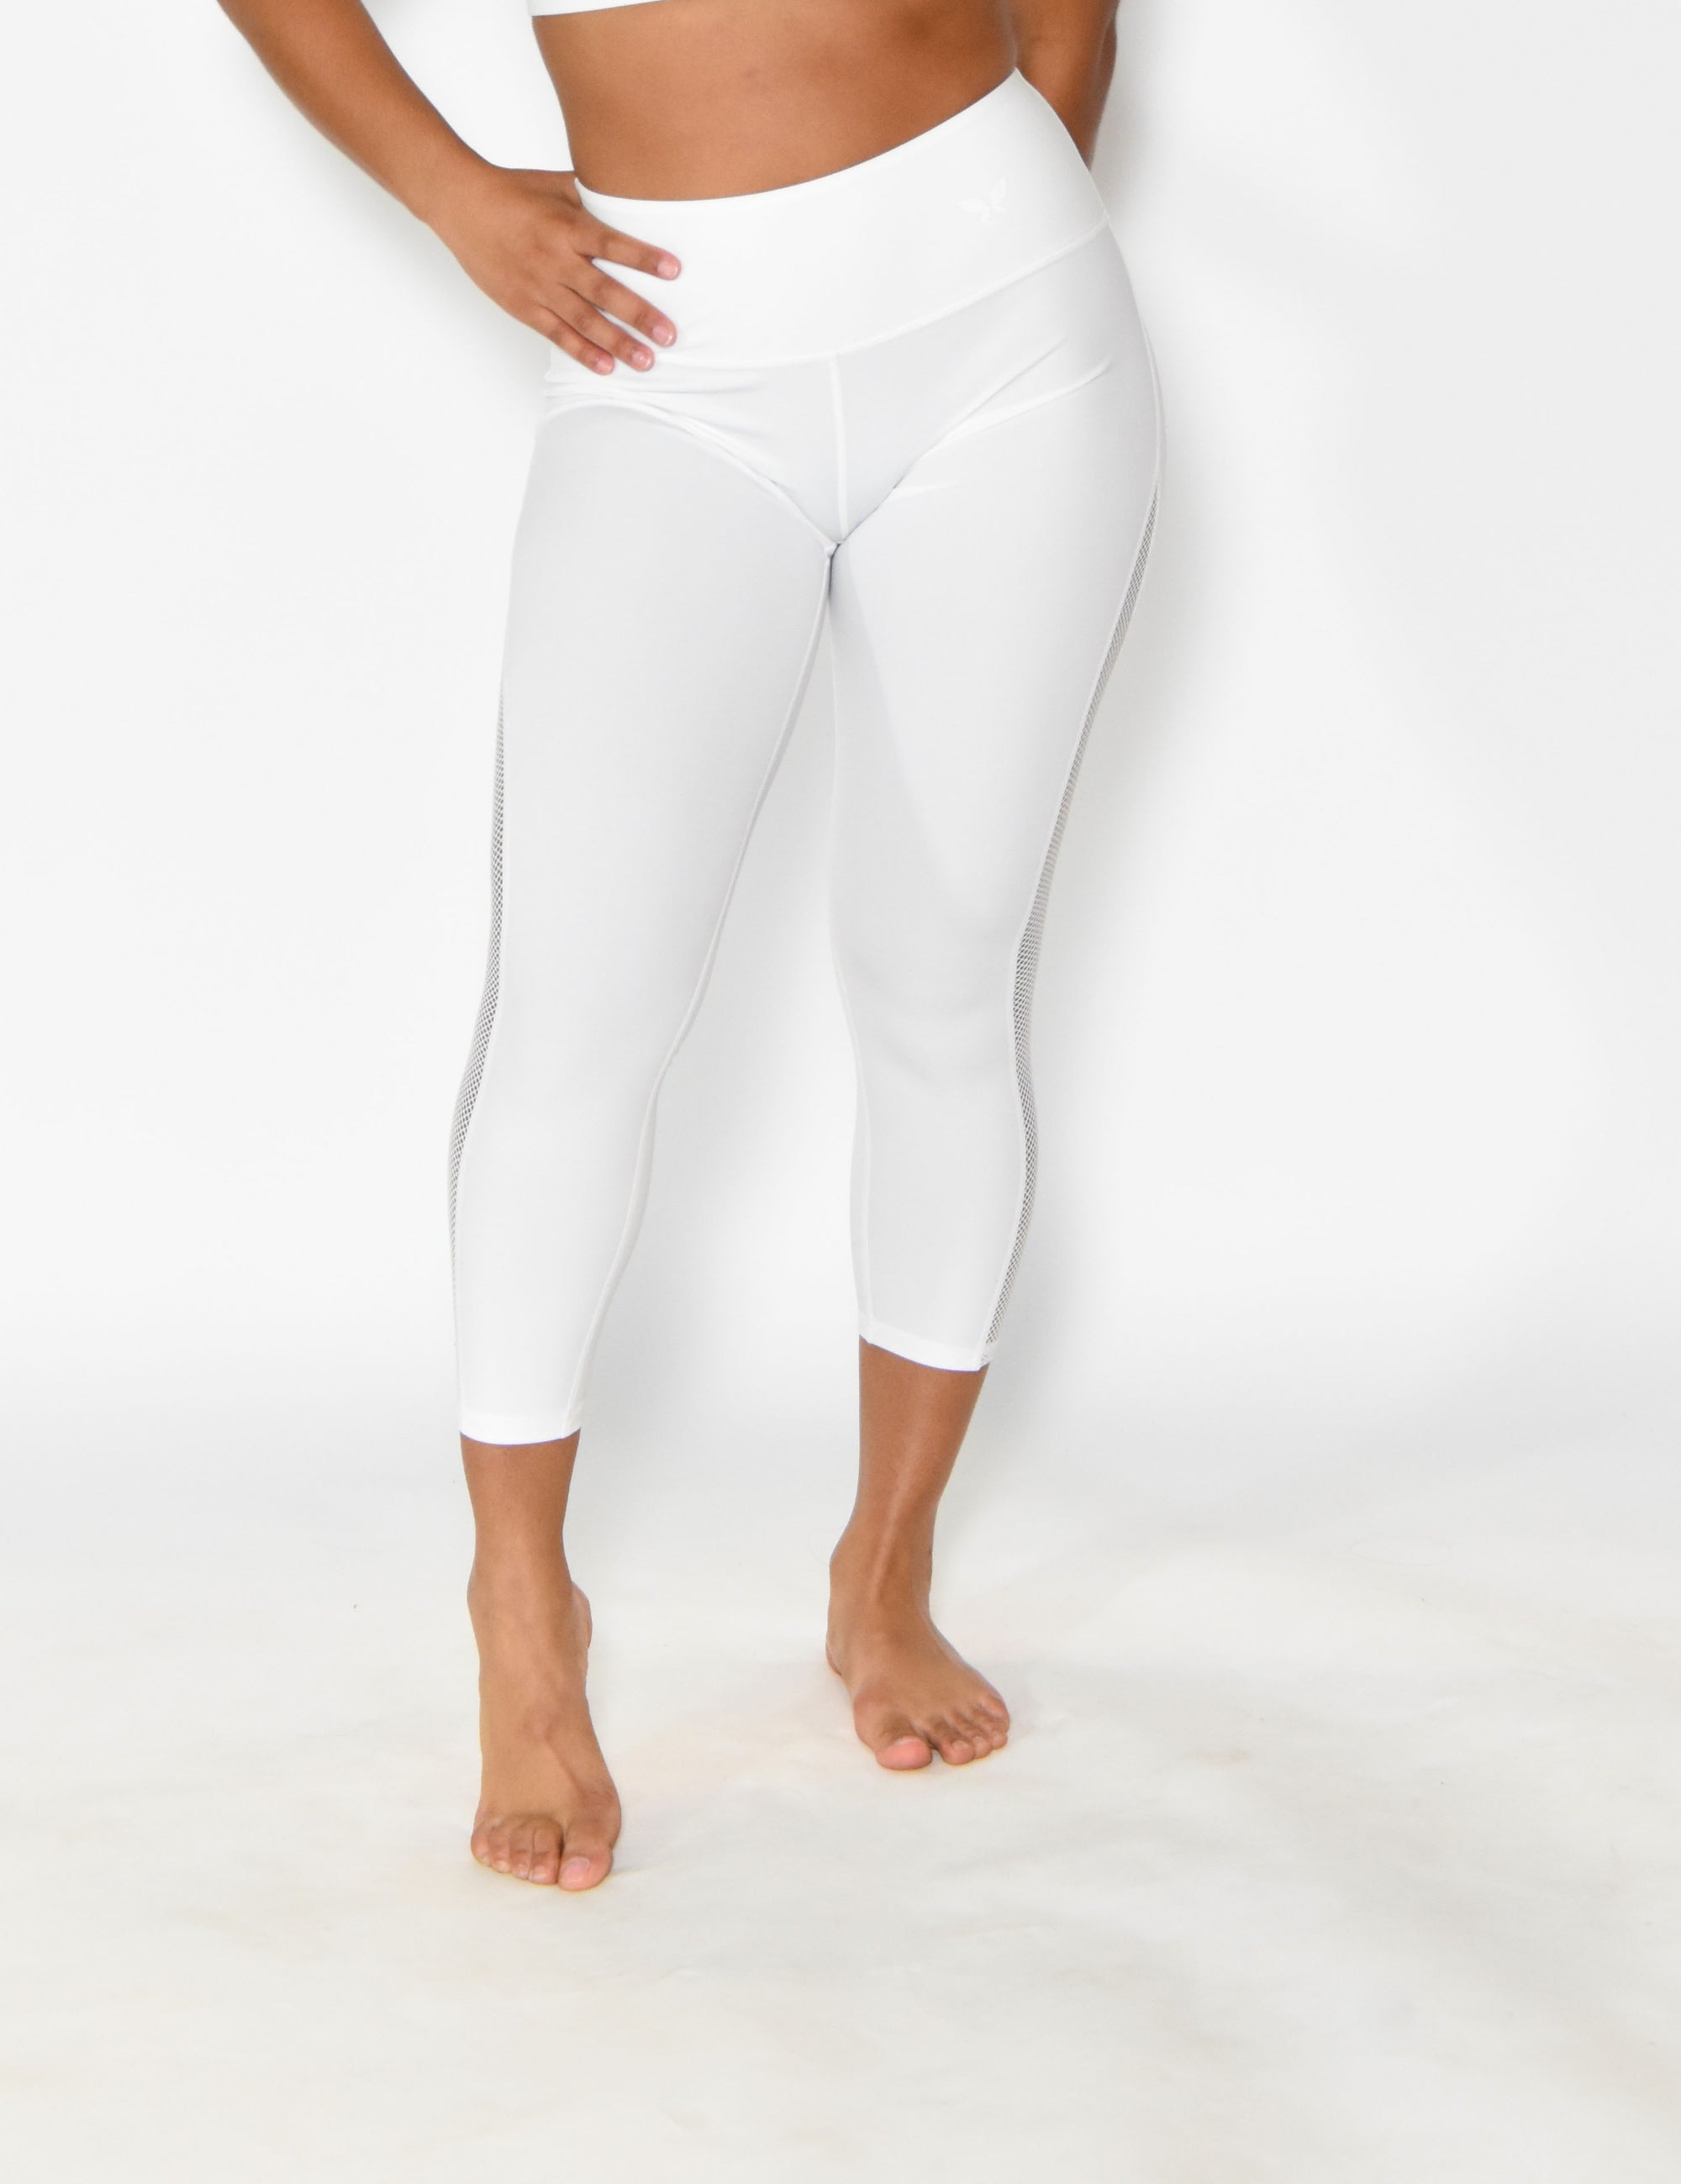 Alo Yoga High-Waist Sheer Mesh Capri 3/4 Length White Leggings